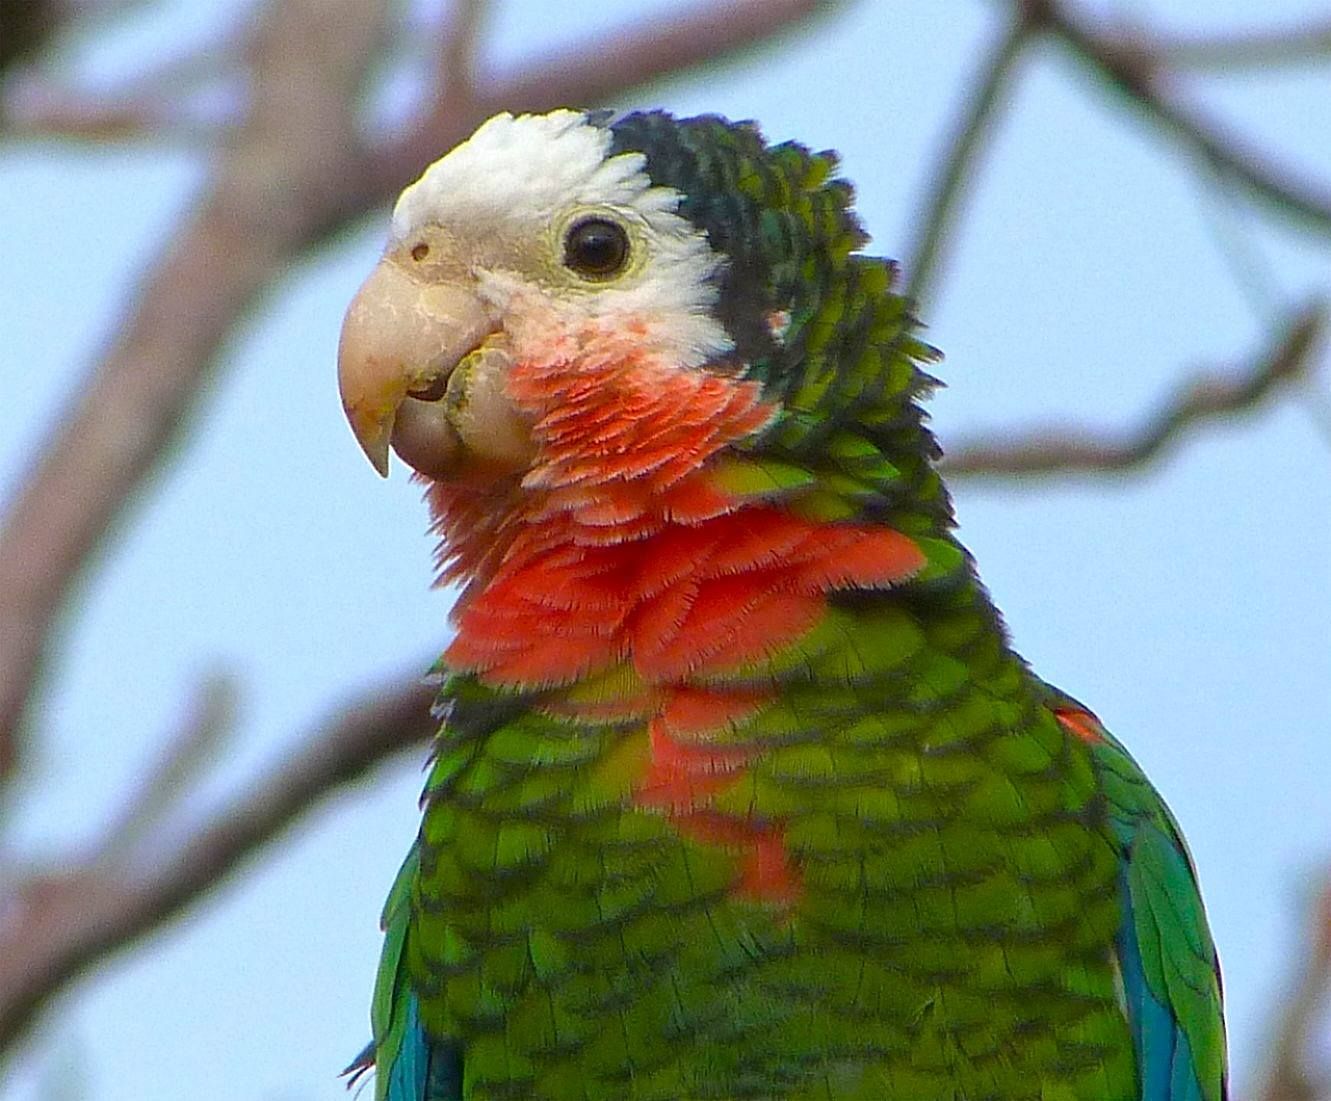 Кубинские амазоны — амазонские попугаи или амазоны